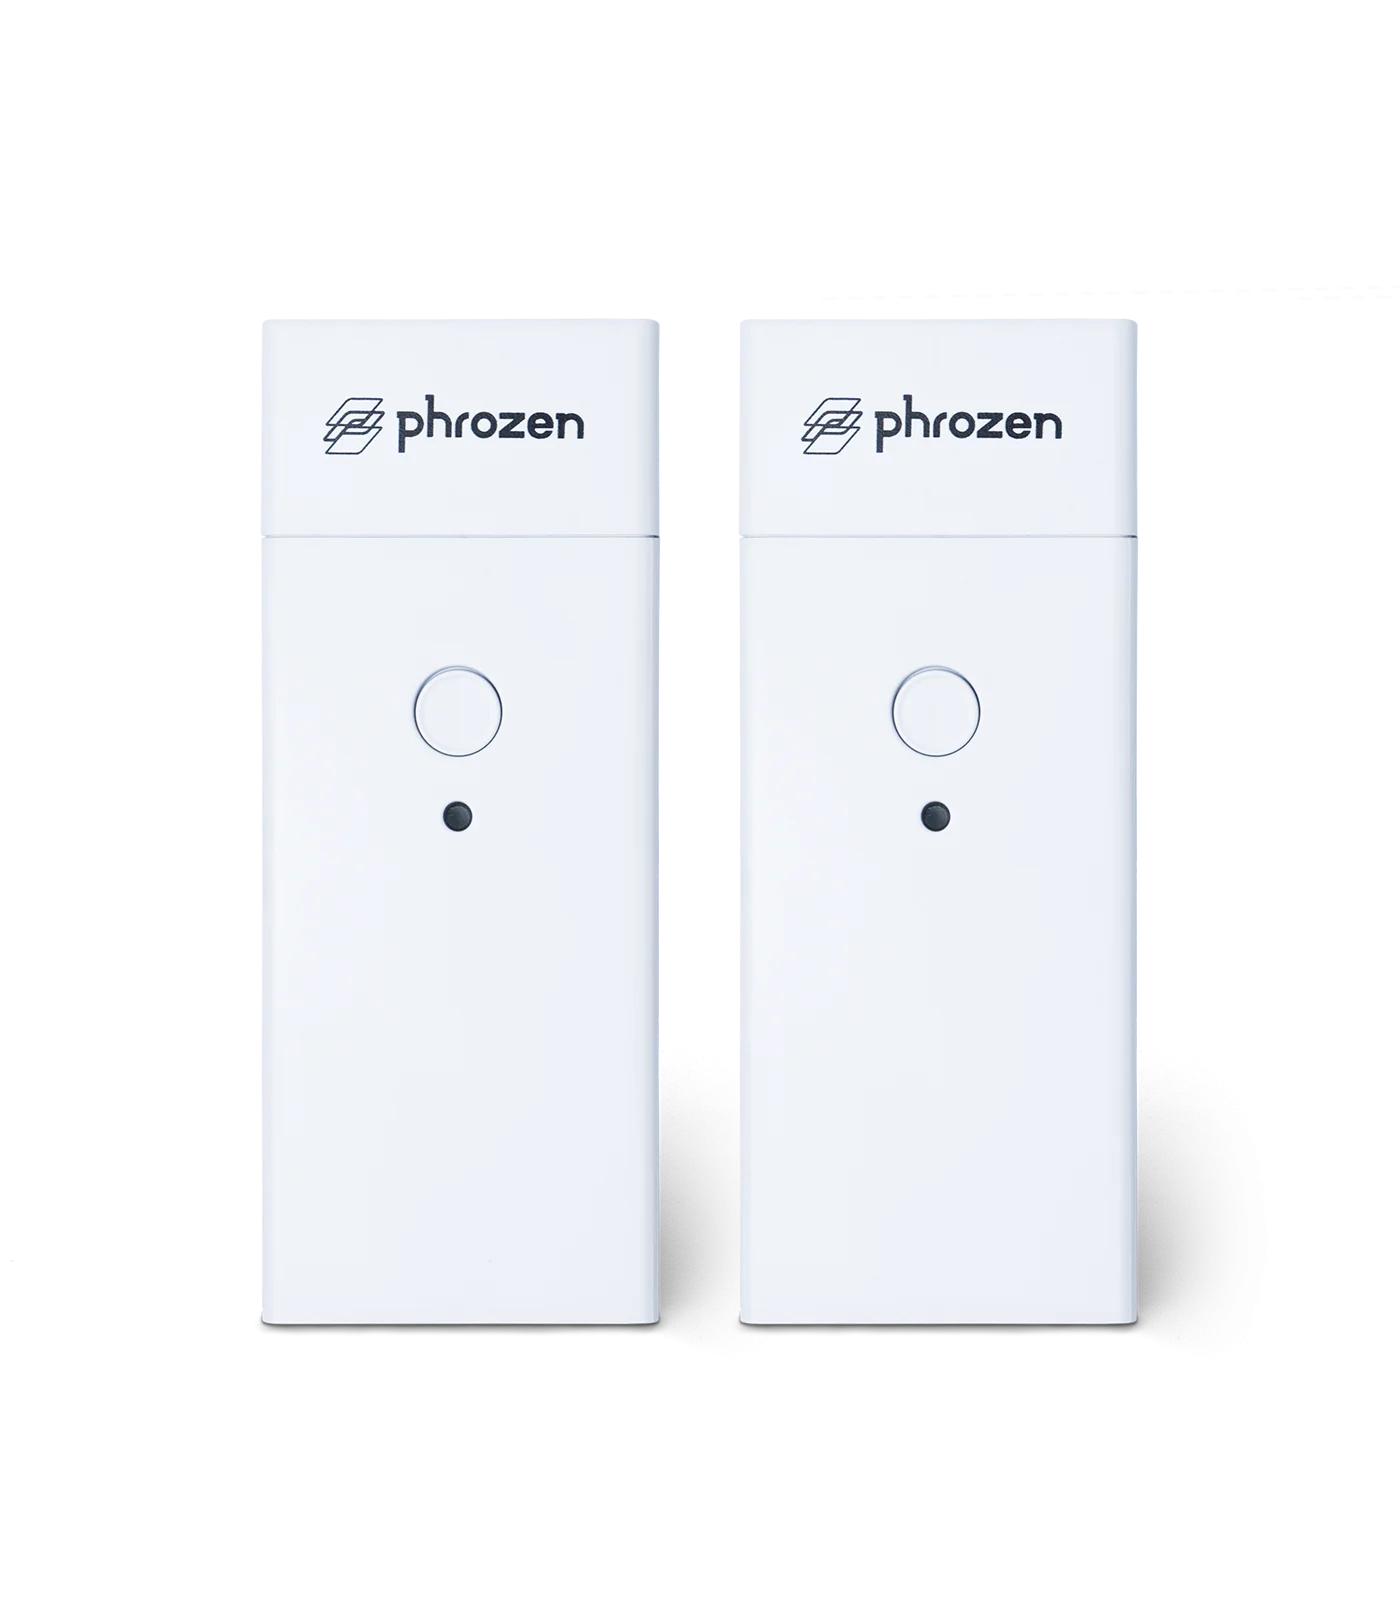 Phrozen 空氣清淨機